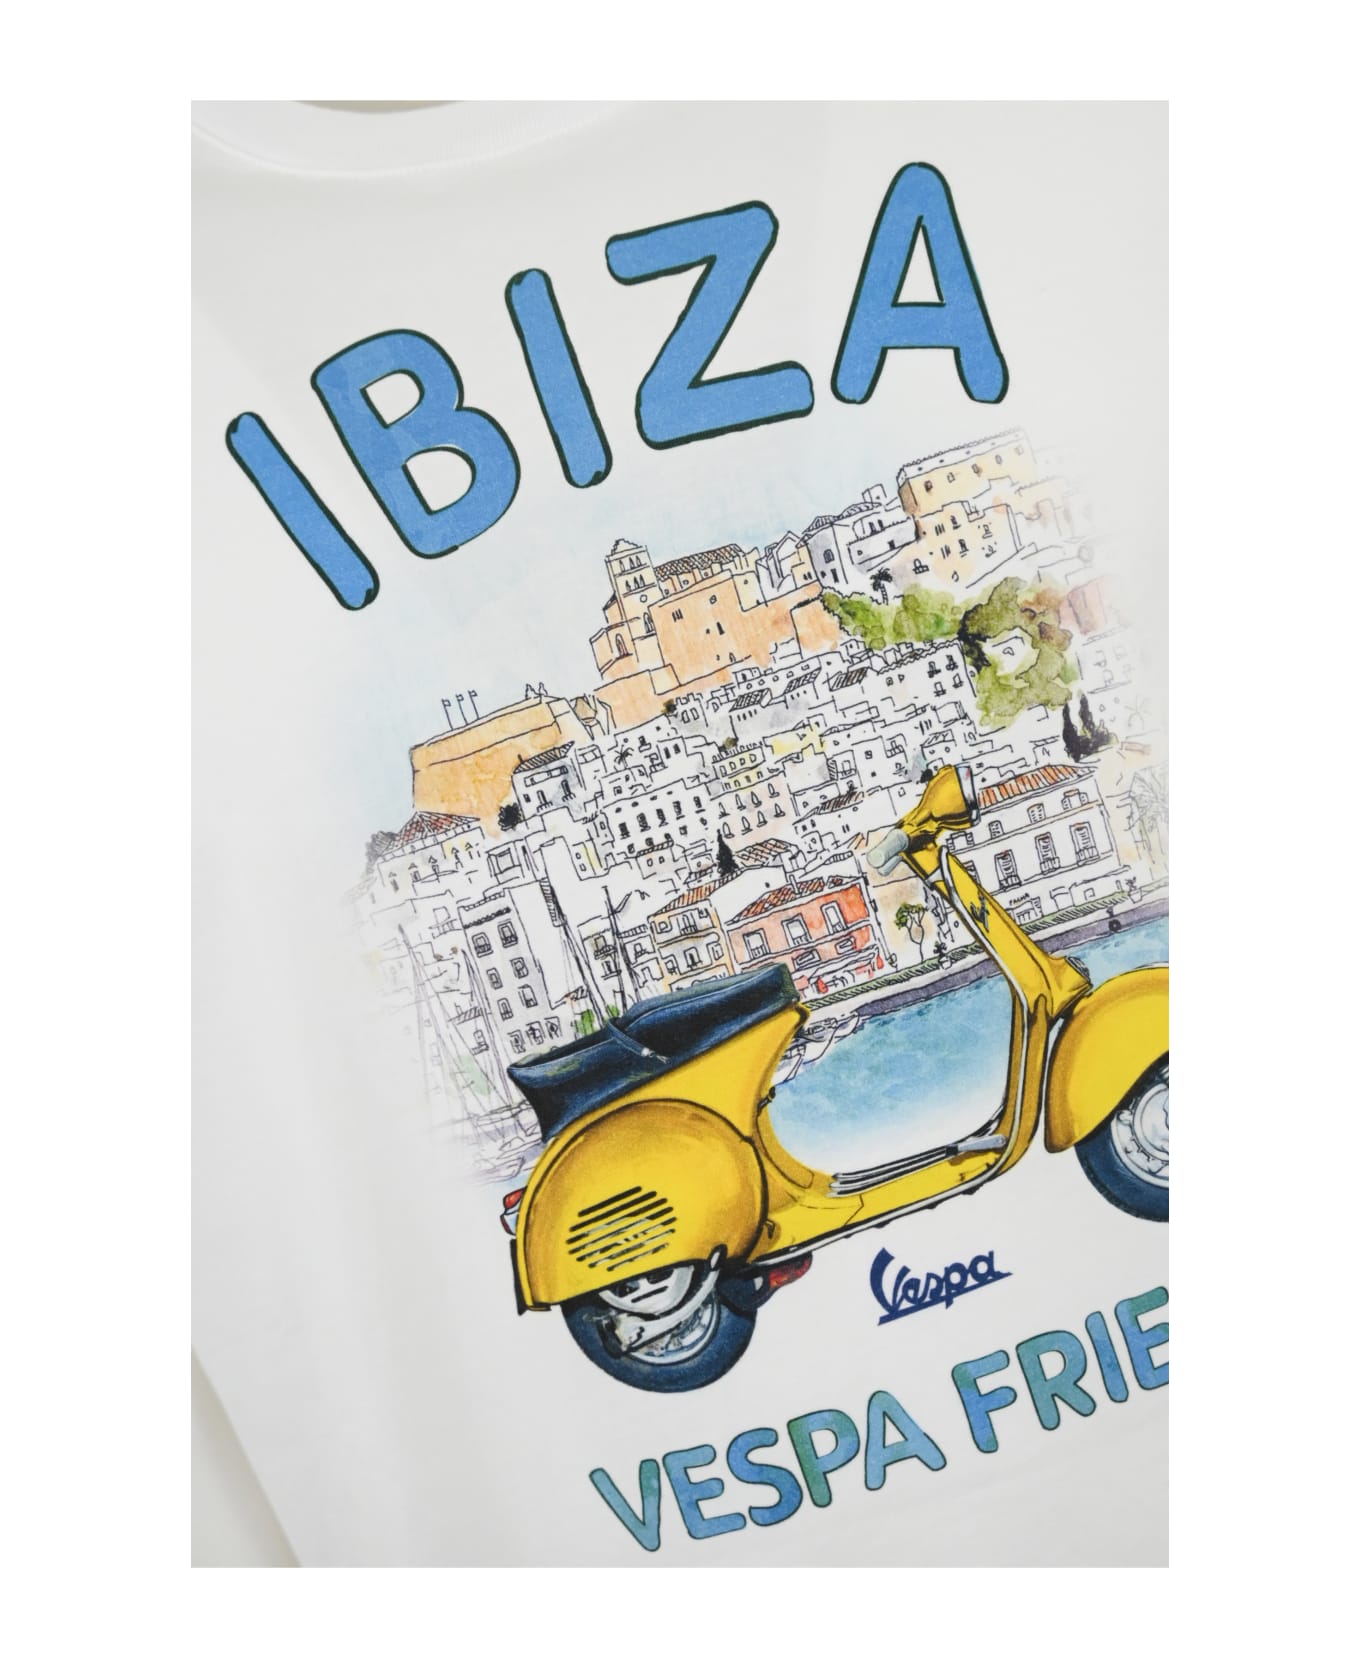 MC2 Saint Barth T-shirt With Ibiza Vespa Friend Print - Bianco